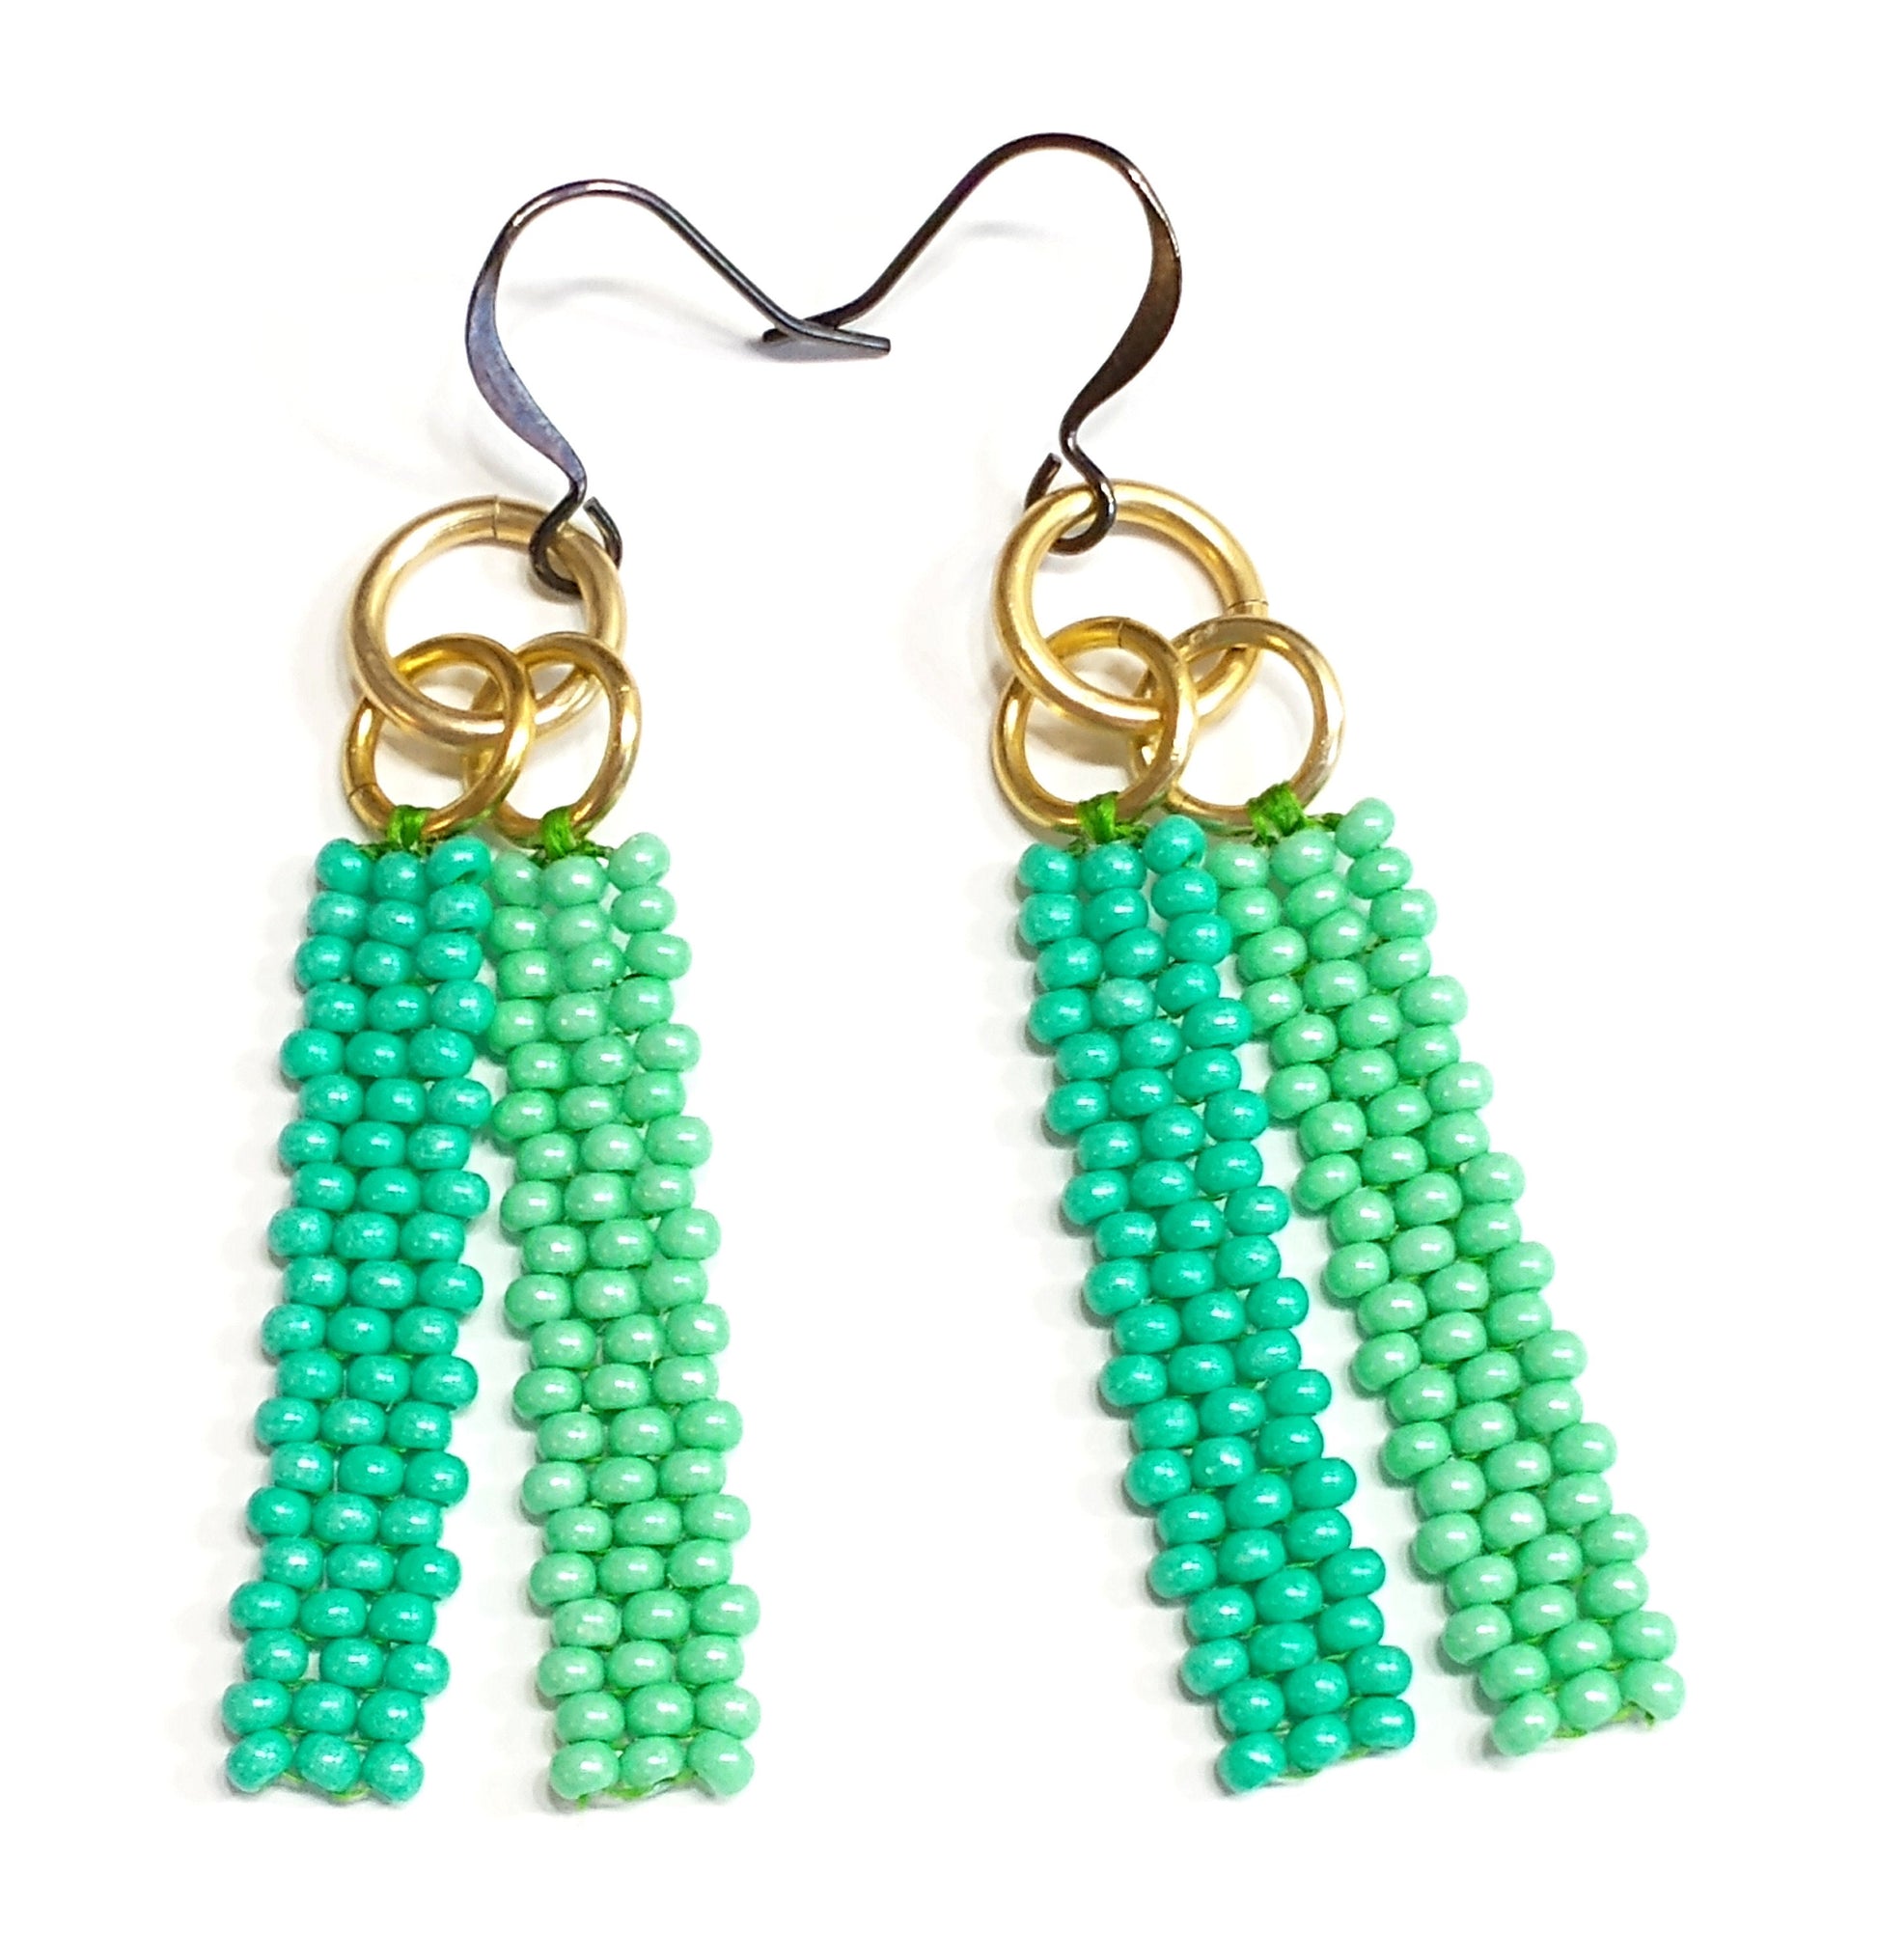 Bar Drop Earrings | Mini Bead Earrings | Minimalist Dangle Earrings | Dainty Green Earrings | Tropical Earrings Beaded | Handwoven Jewelry